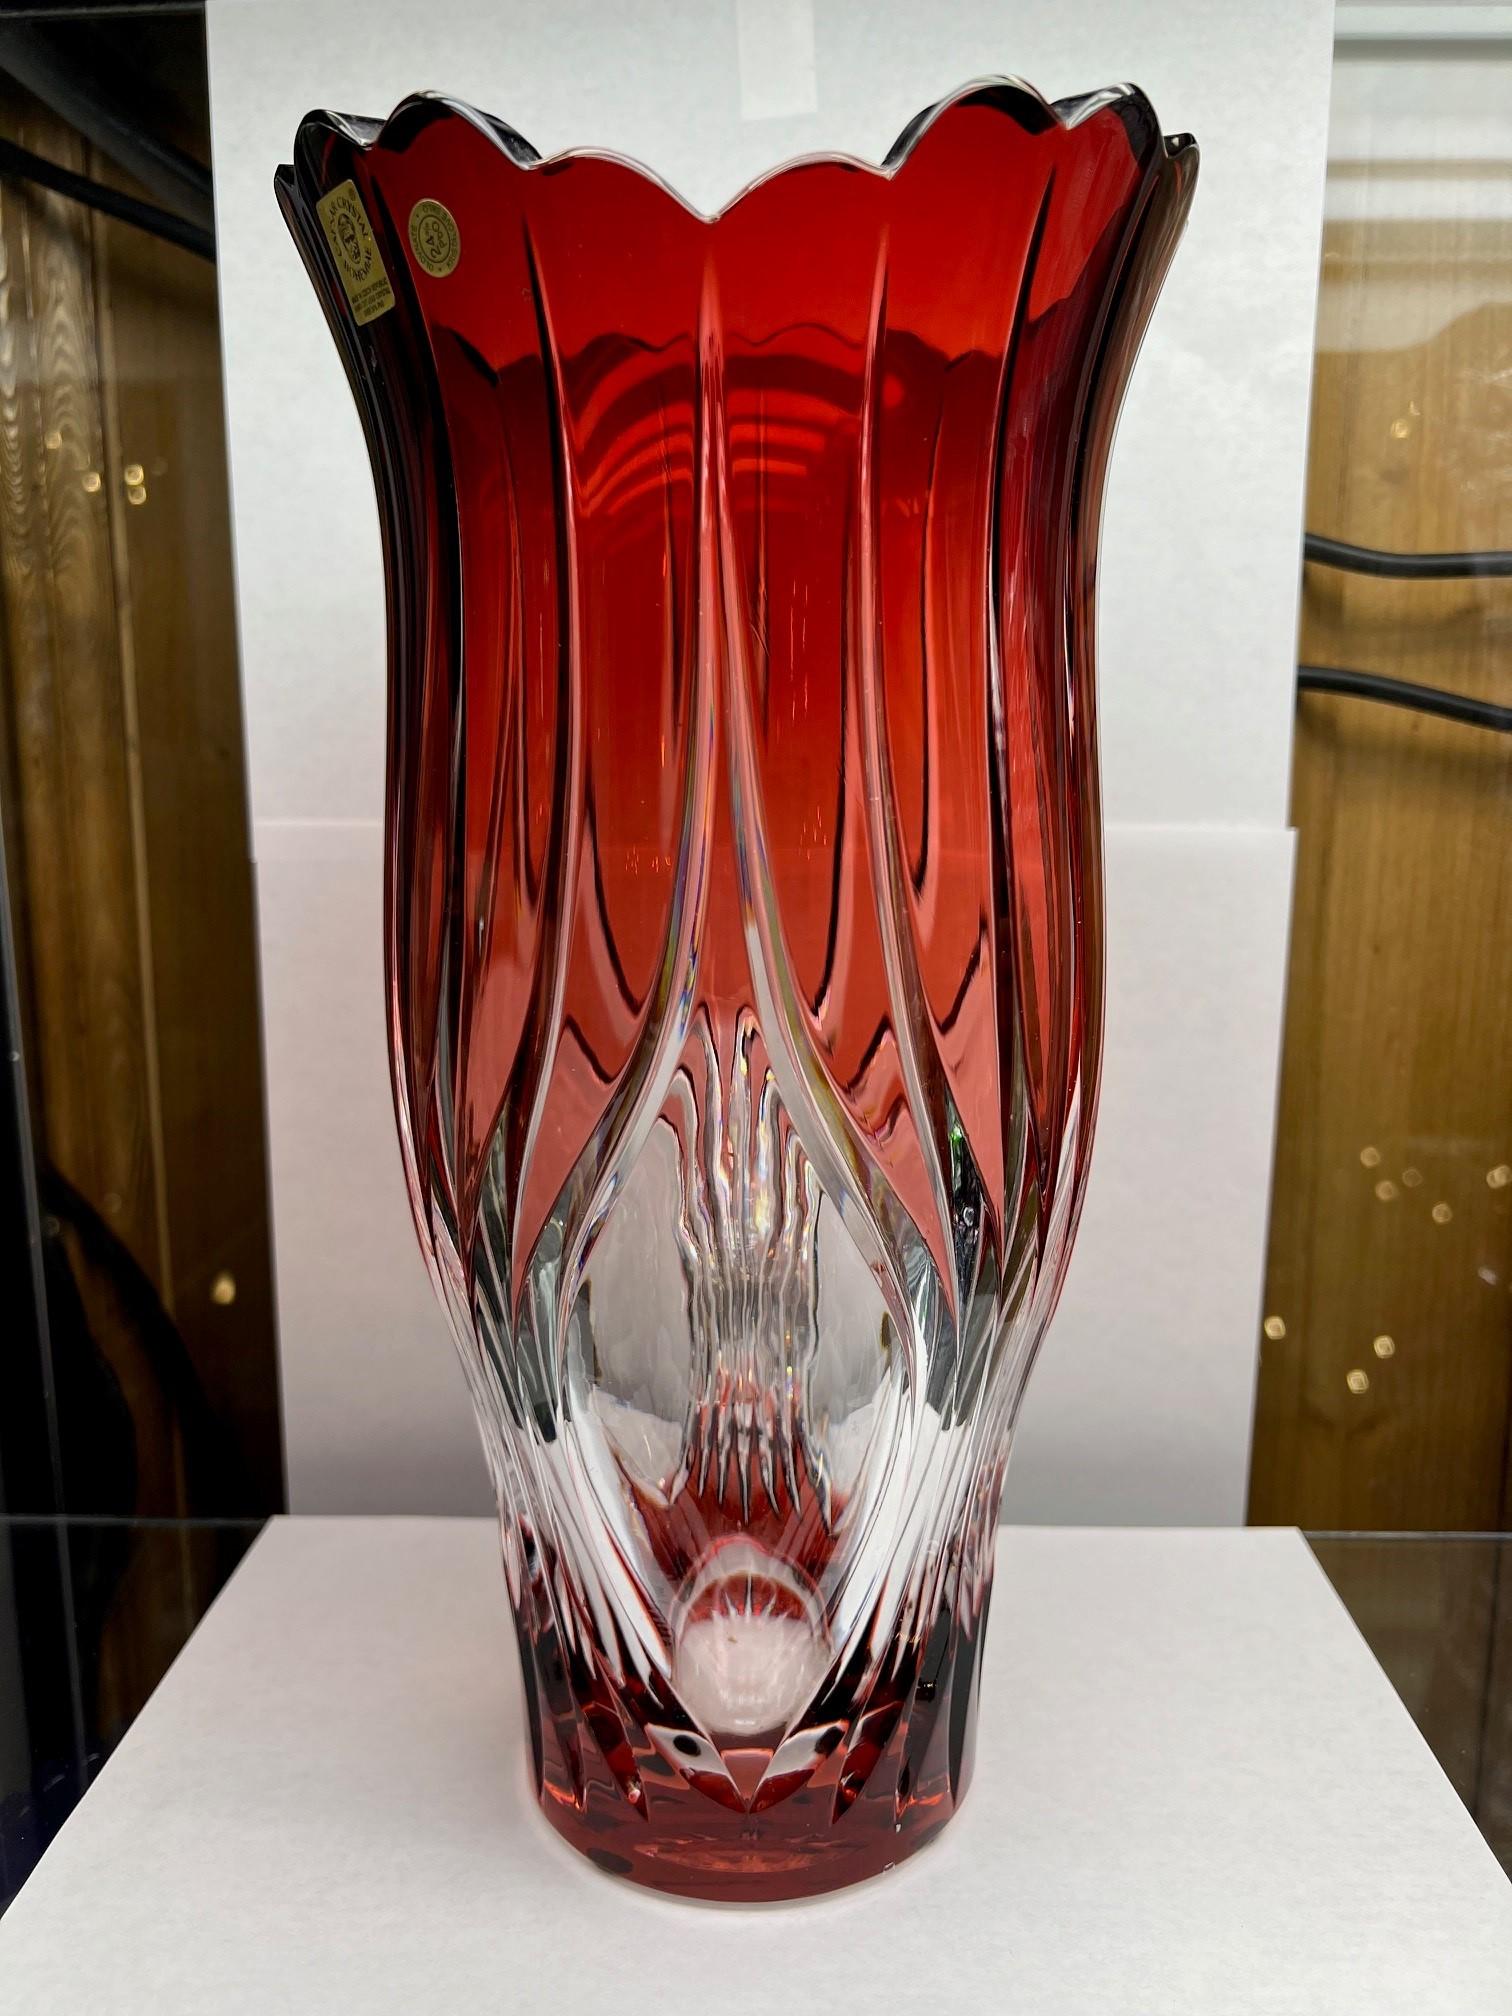 Atemberaubende Vase aus handgeschliffenem Bleikristall, die von den Händen der besten tschechischen Glasmacher als Kunstwerk geschaffen wurde. Die Caesar Crystal Company in der Tschechischen Republik vertreibt seit 1861 handgeschliffene